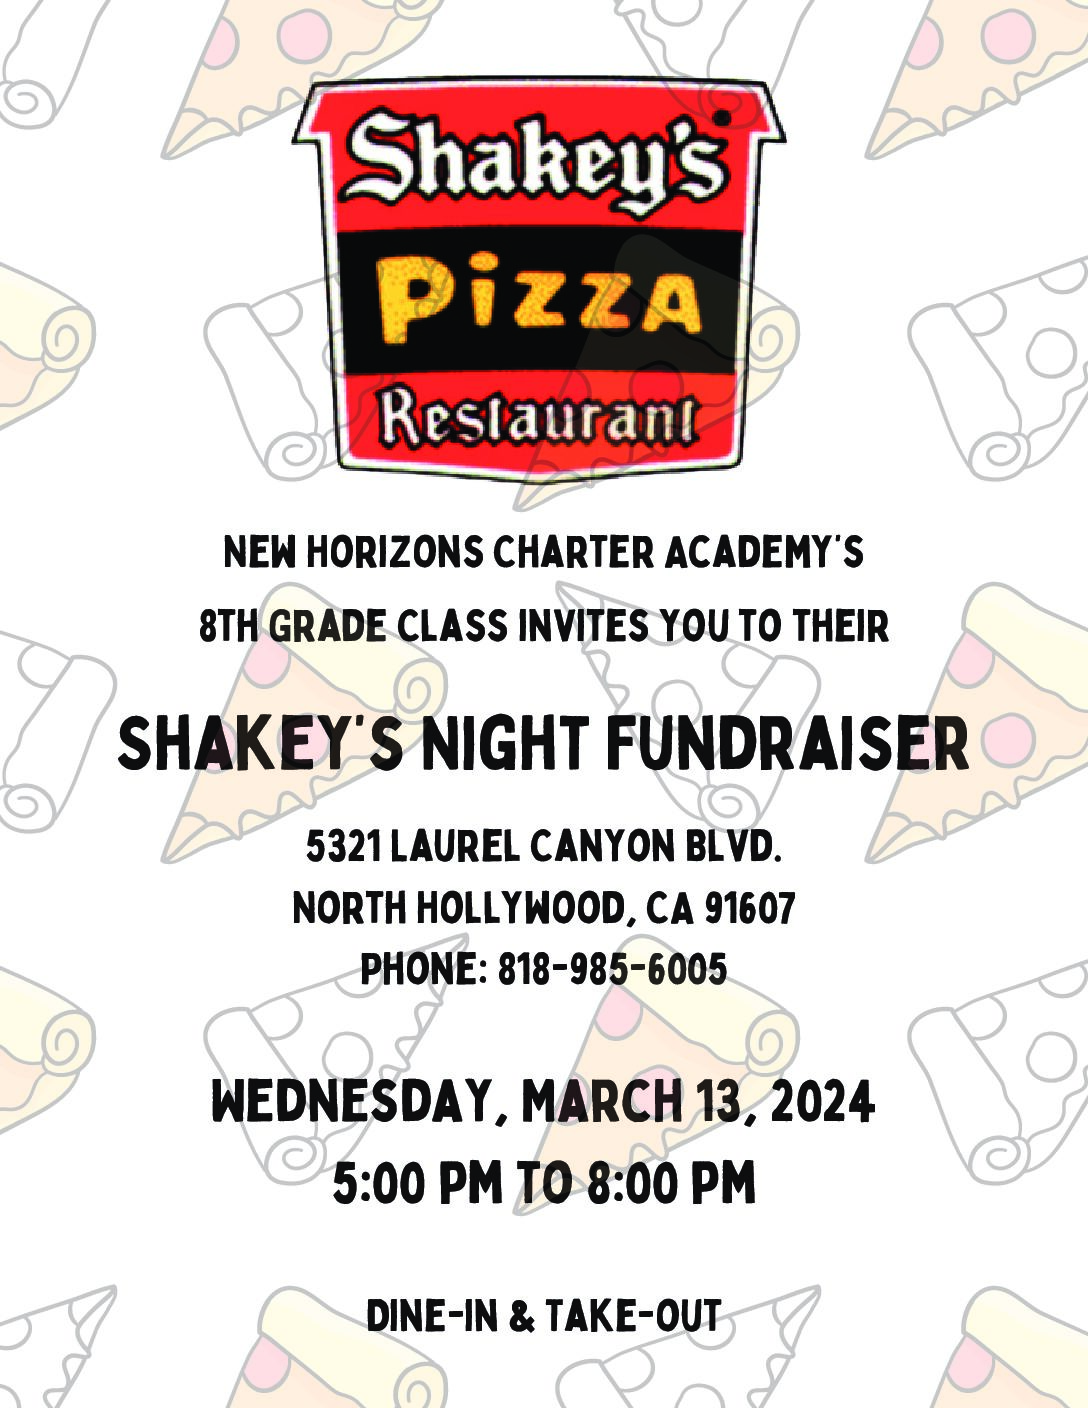 Shakeys Fundraiser Night!